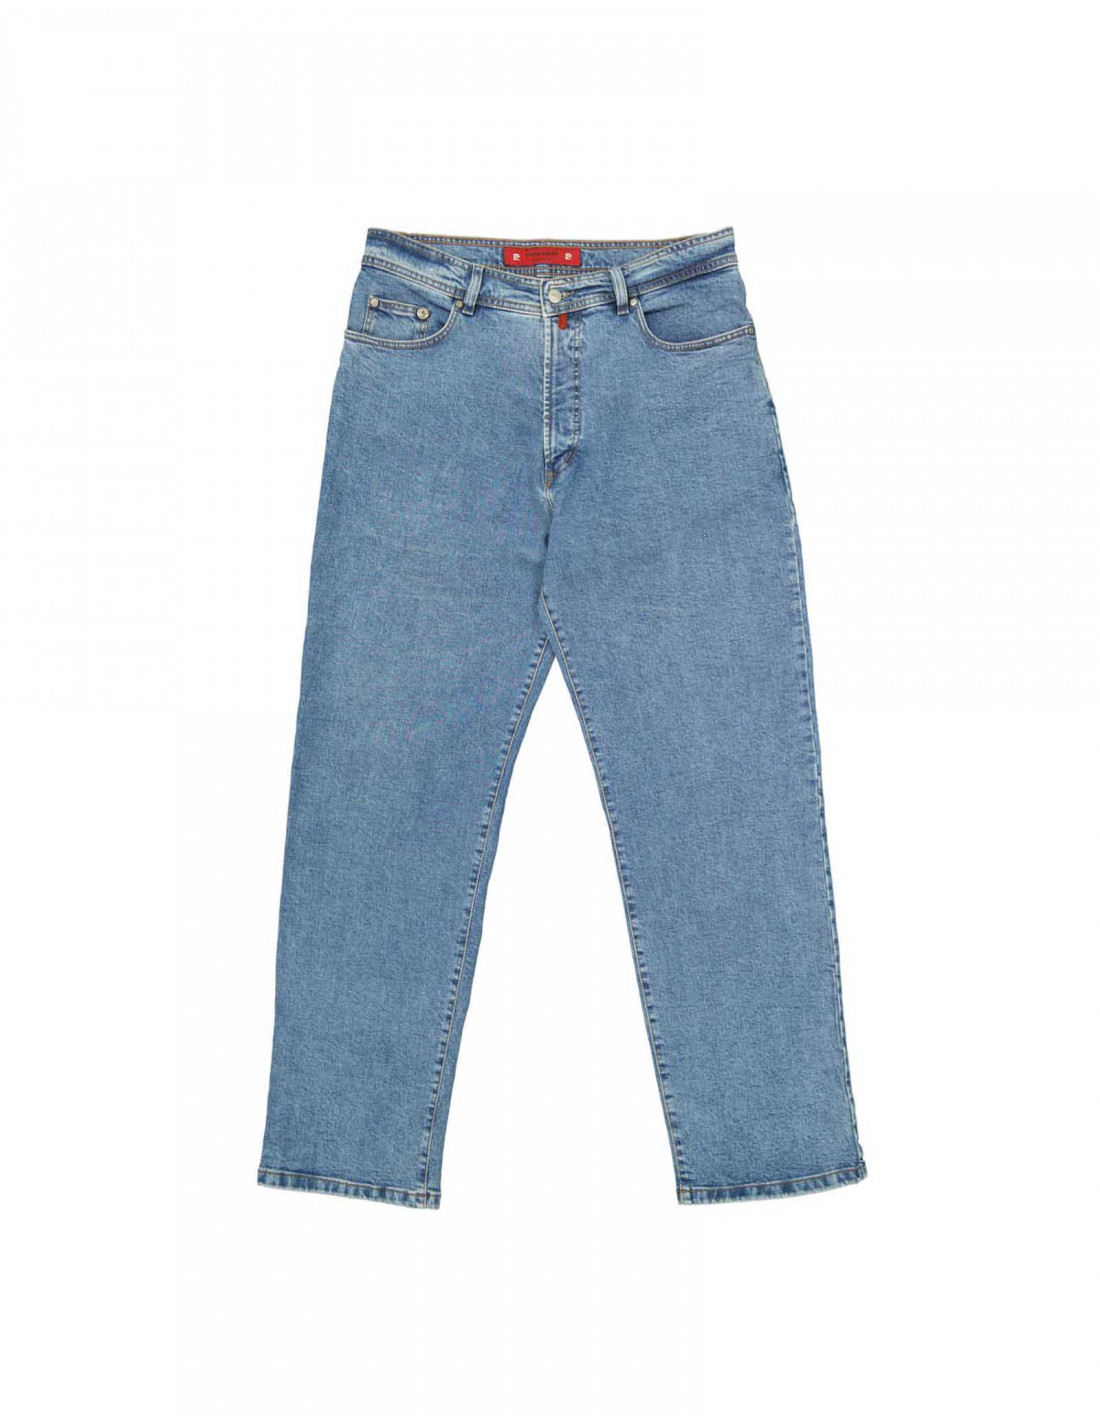 Dakloos Wanorde Monopoly Pierre Cardin men's jeans